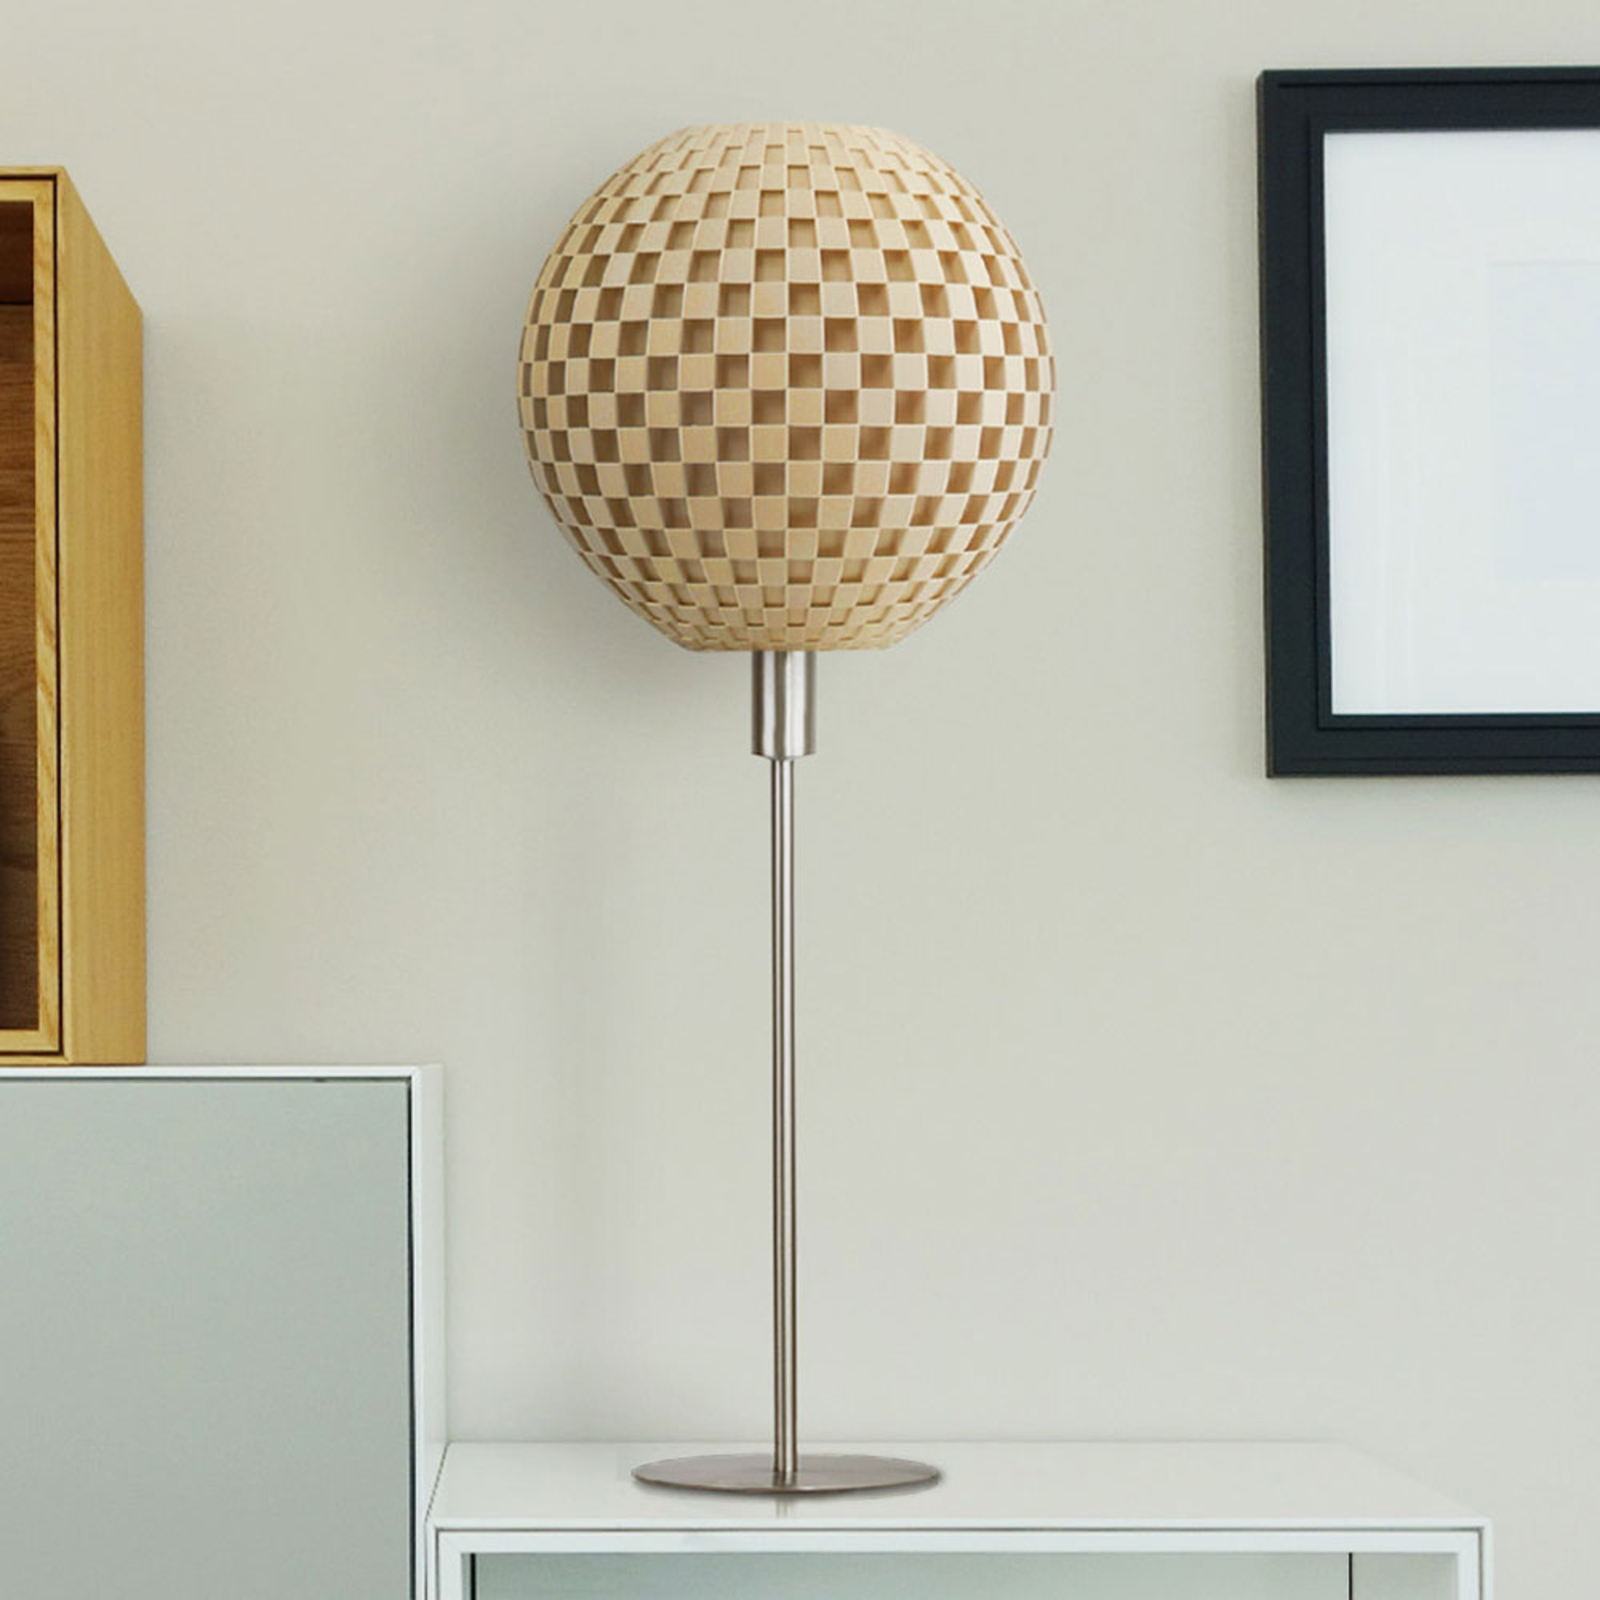 Flechtwerk table lamp, globe with base, beige